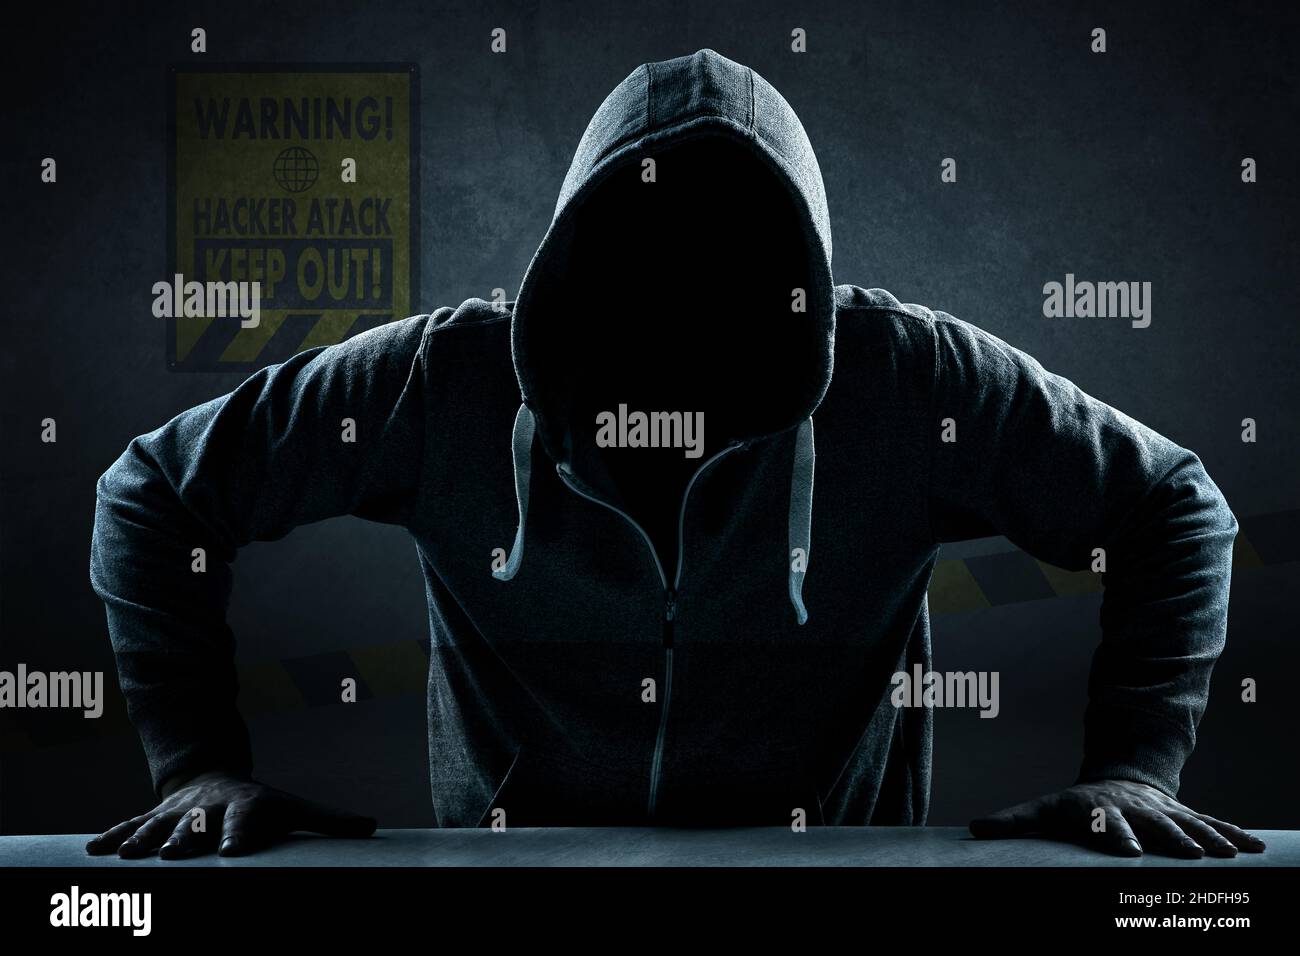 Warnung, Hacker, anonym, Cyberkriminalität, Hacker Stockfoto